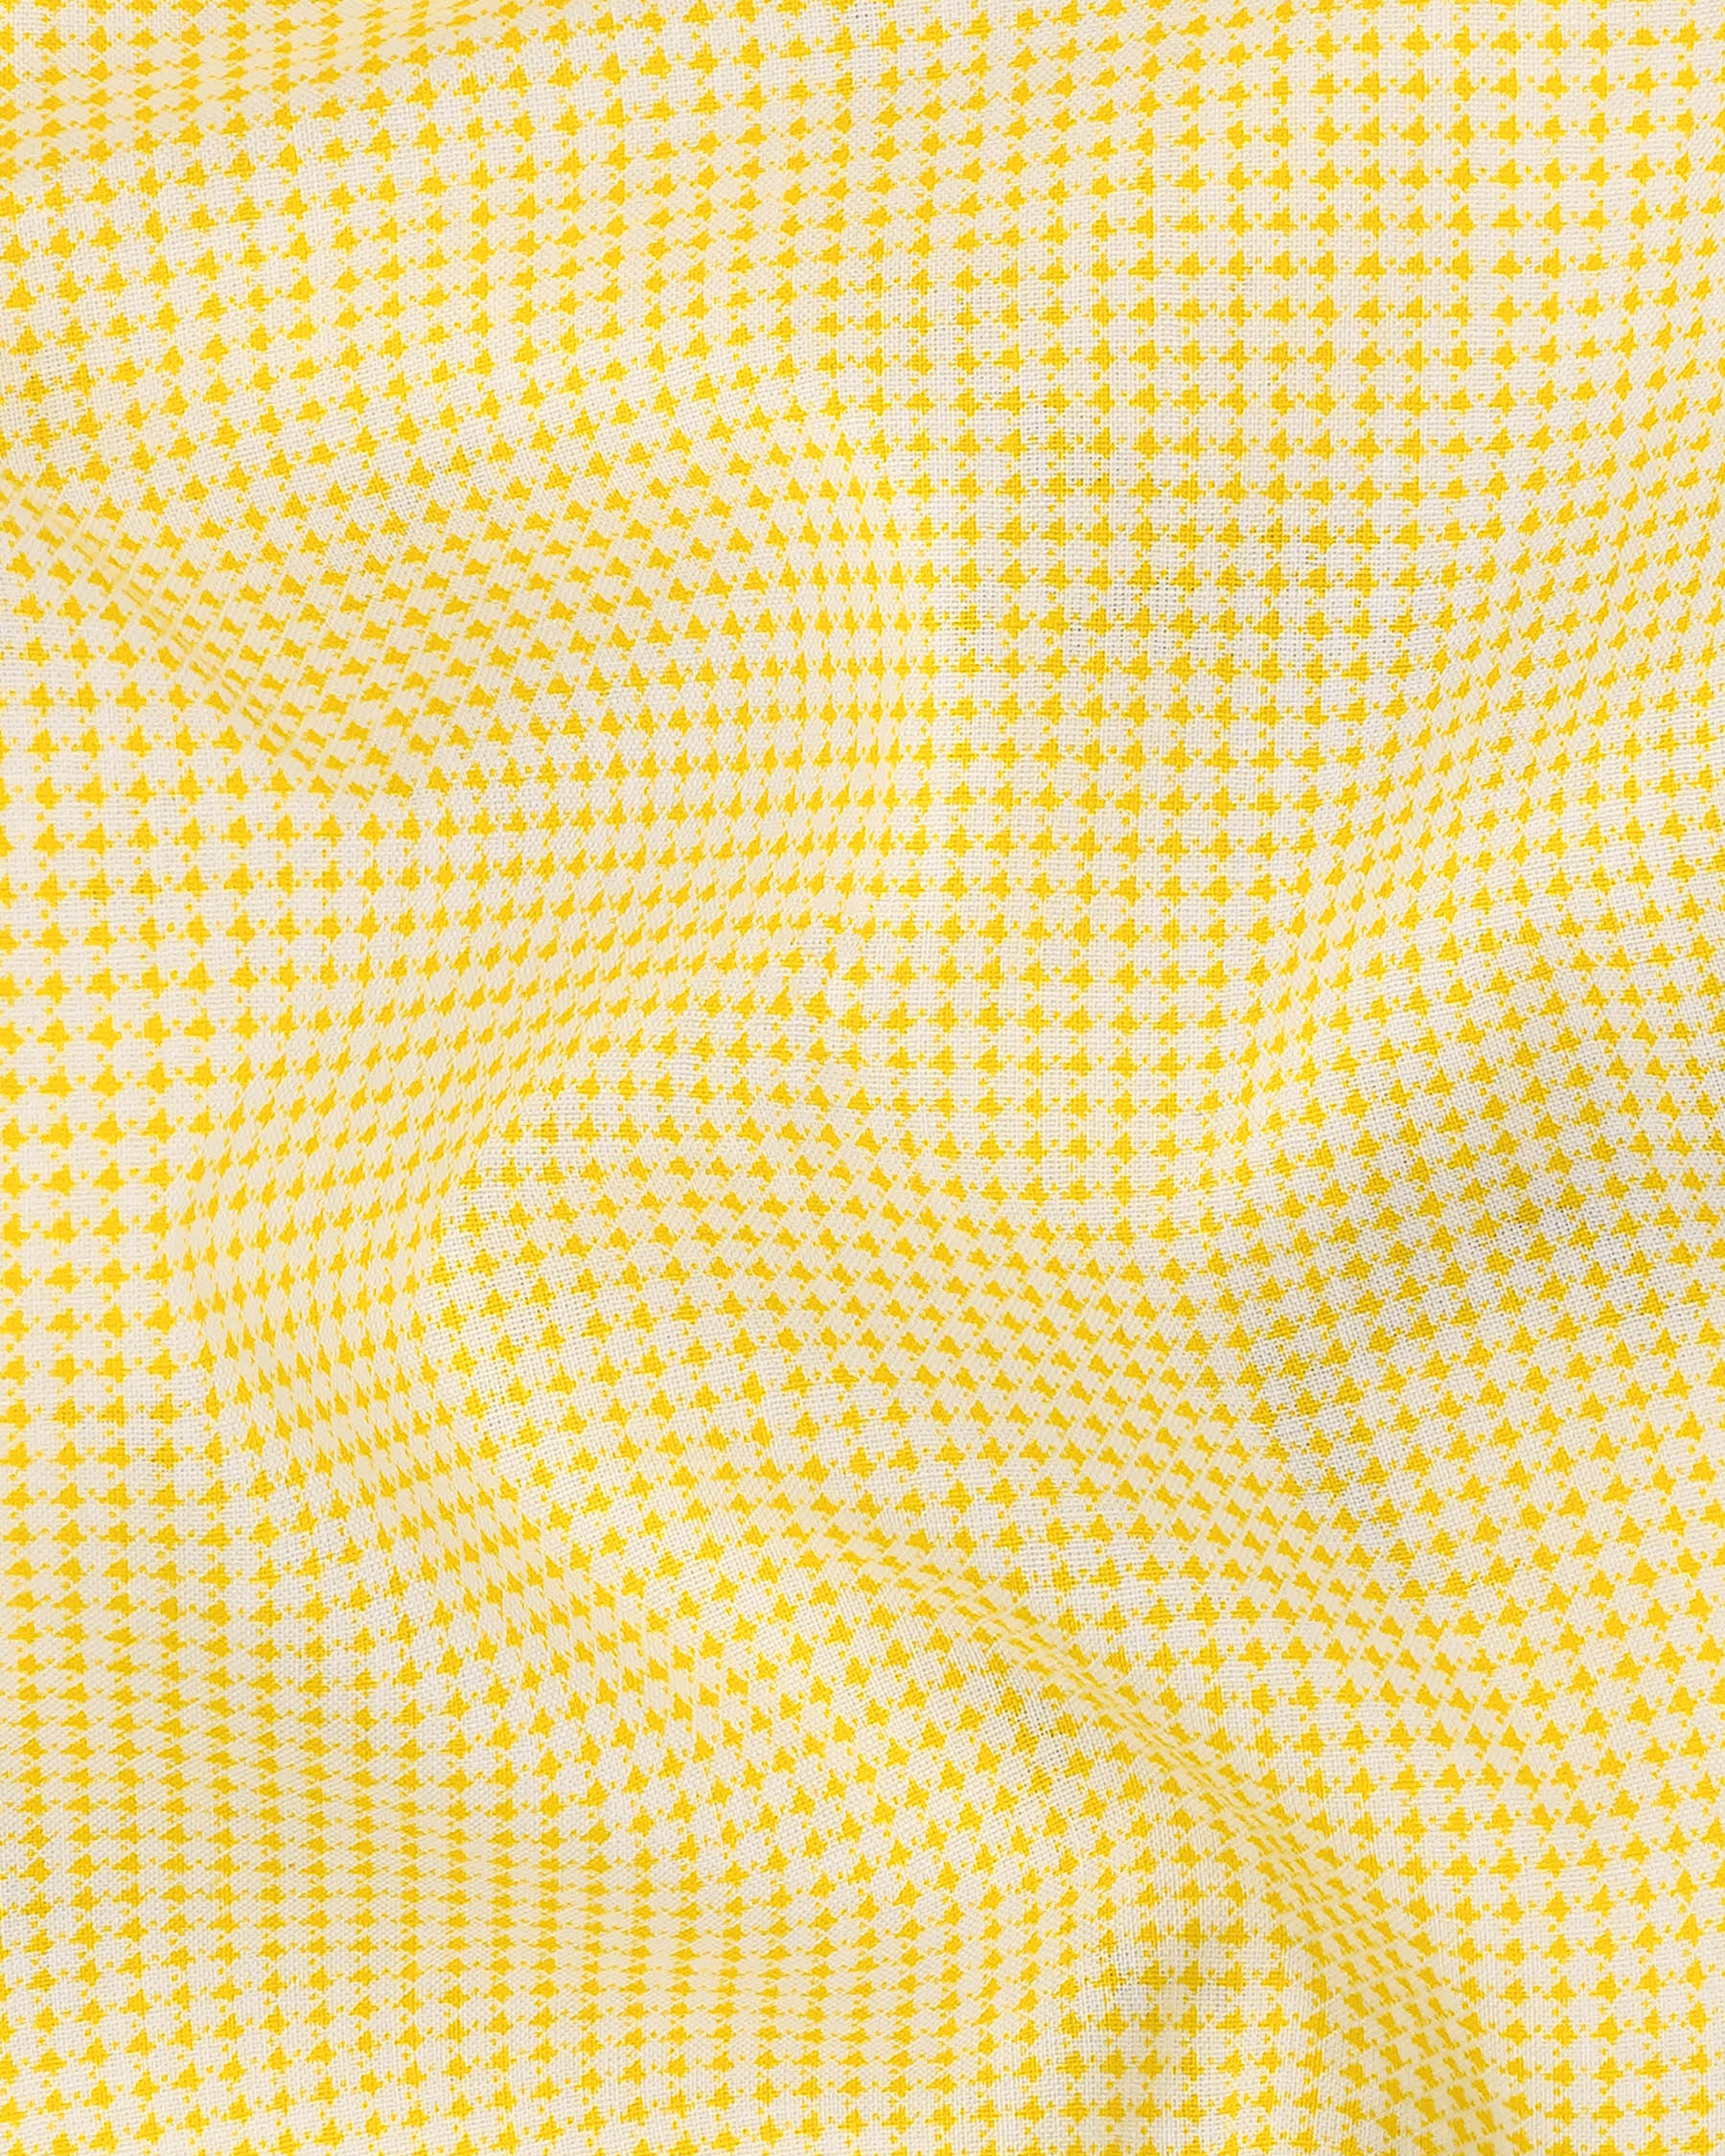 Dandelion Yellow and Bright White Mini Checkered Premium Cotton Shirt 7980-M-38,7980-M-H-38,7980-M-39,7980-M-H-39,7980-M-40,7980-M-H-40,7980-M-42,7980-M-H-42,7980-M-44,7980-M-H-44,7980-M-46,7980-M-H-46,7980-M-48,7980-M-H-48,7980-M-50,7980-M-H-50,7980-M-52,7980-M-H-52